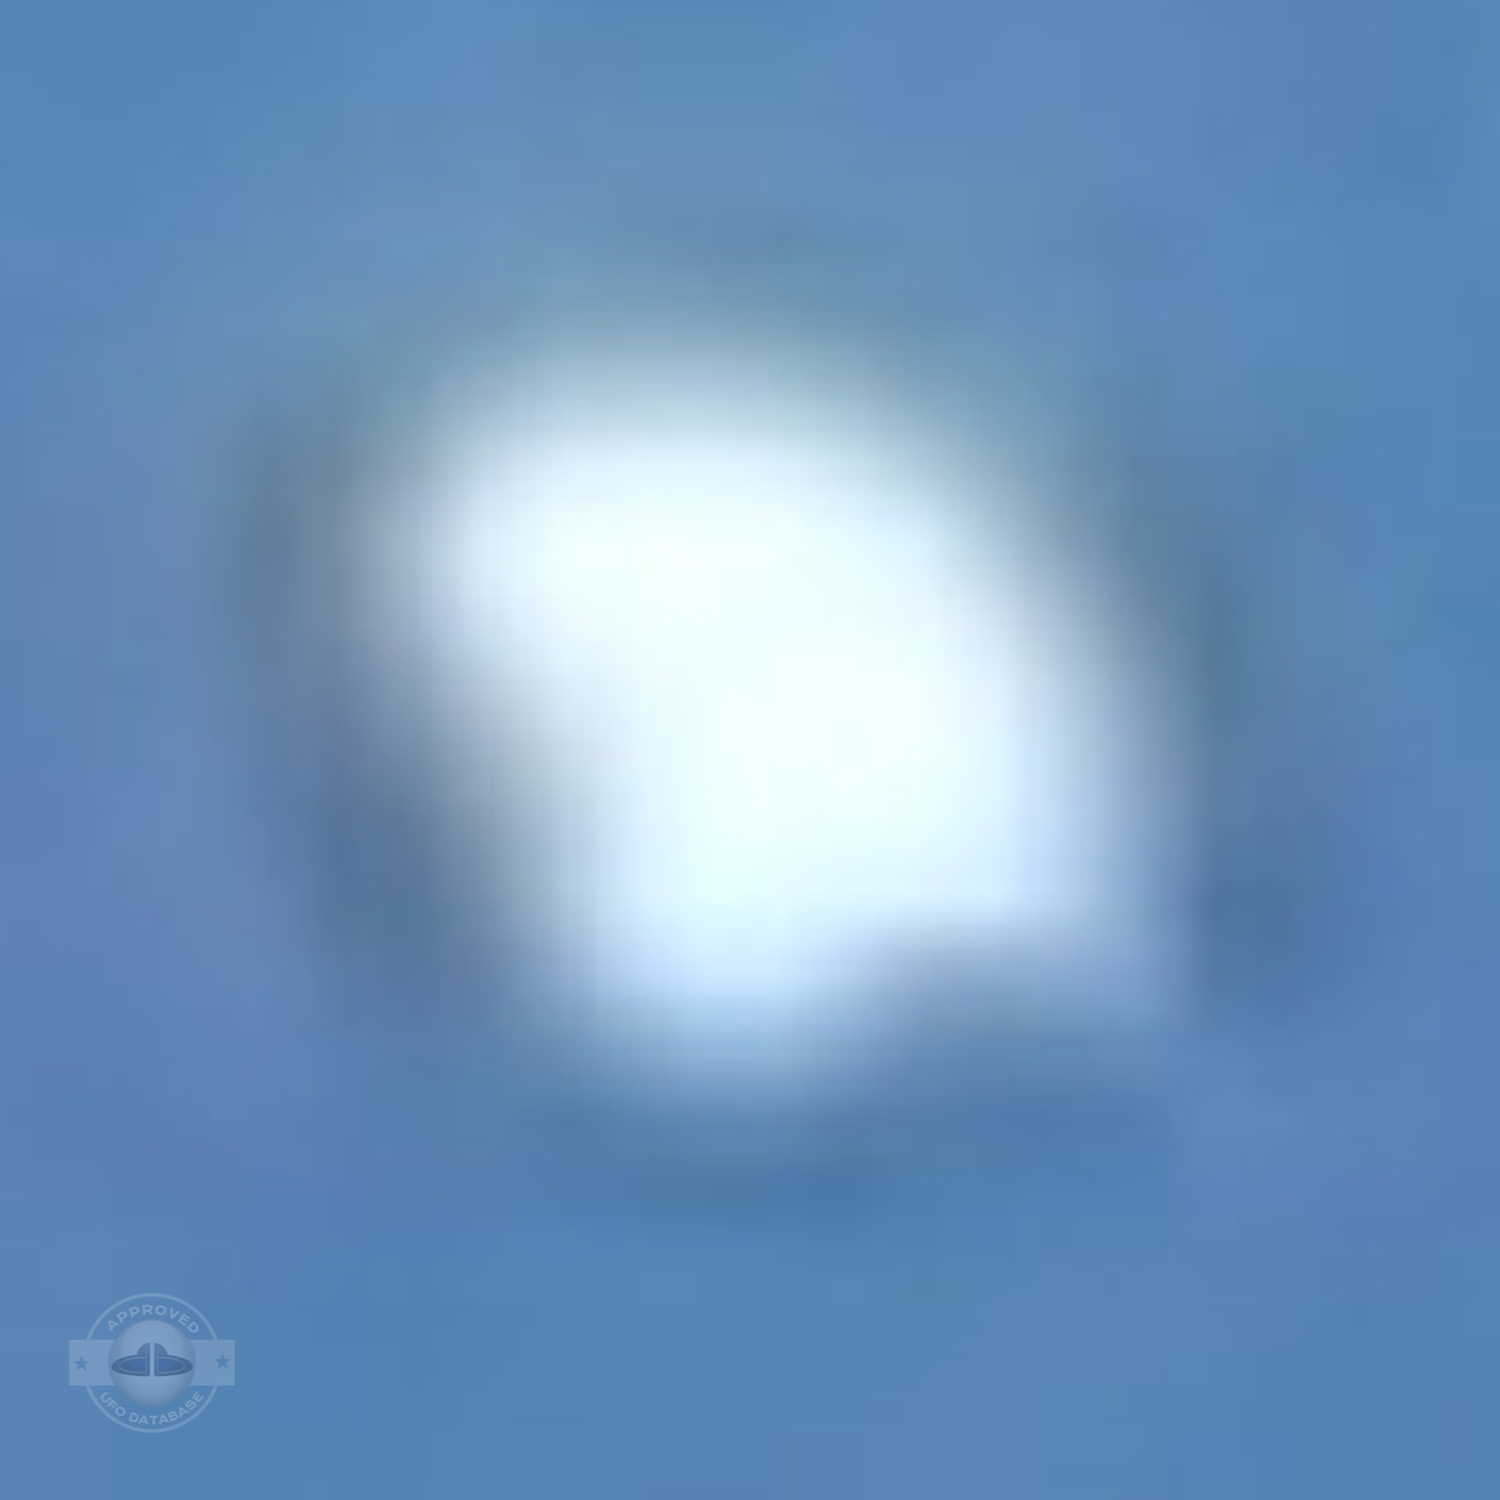 Extremely Shinning UFO probe over Yavatmal | Maharashtra, India 2009 UFO Picture #212-4